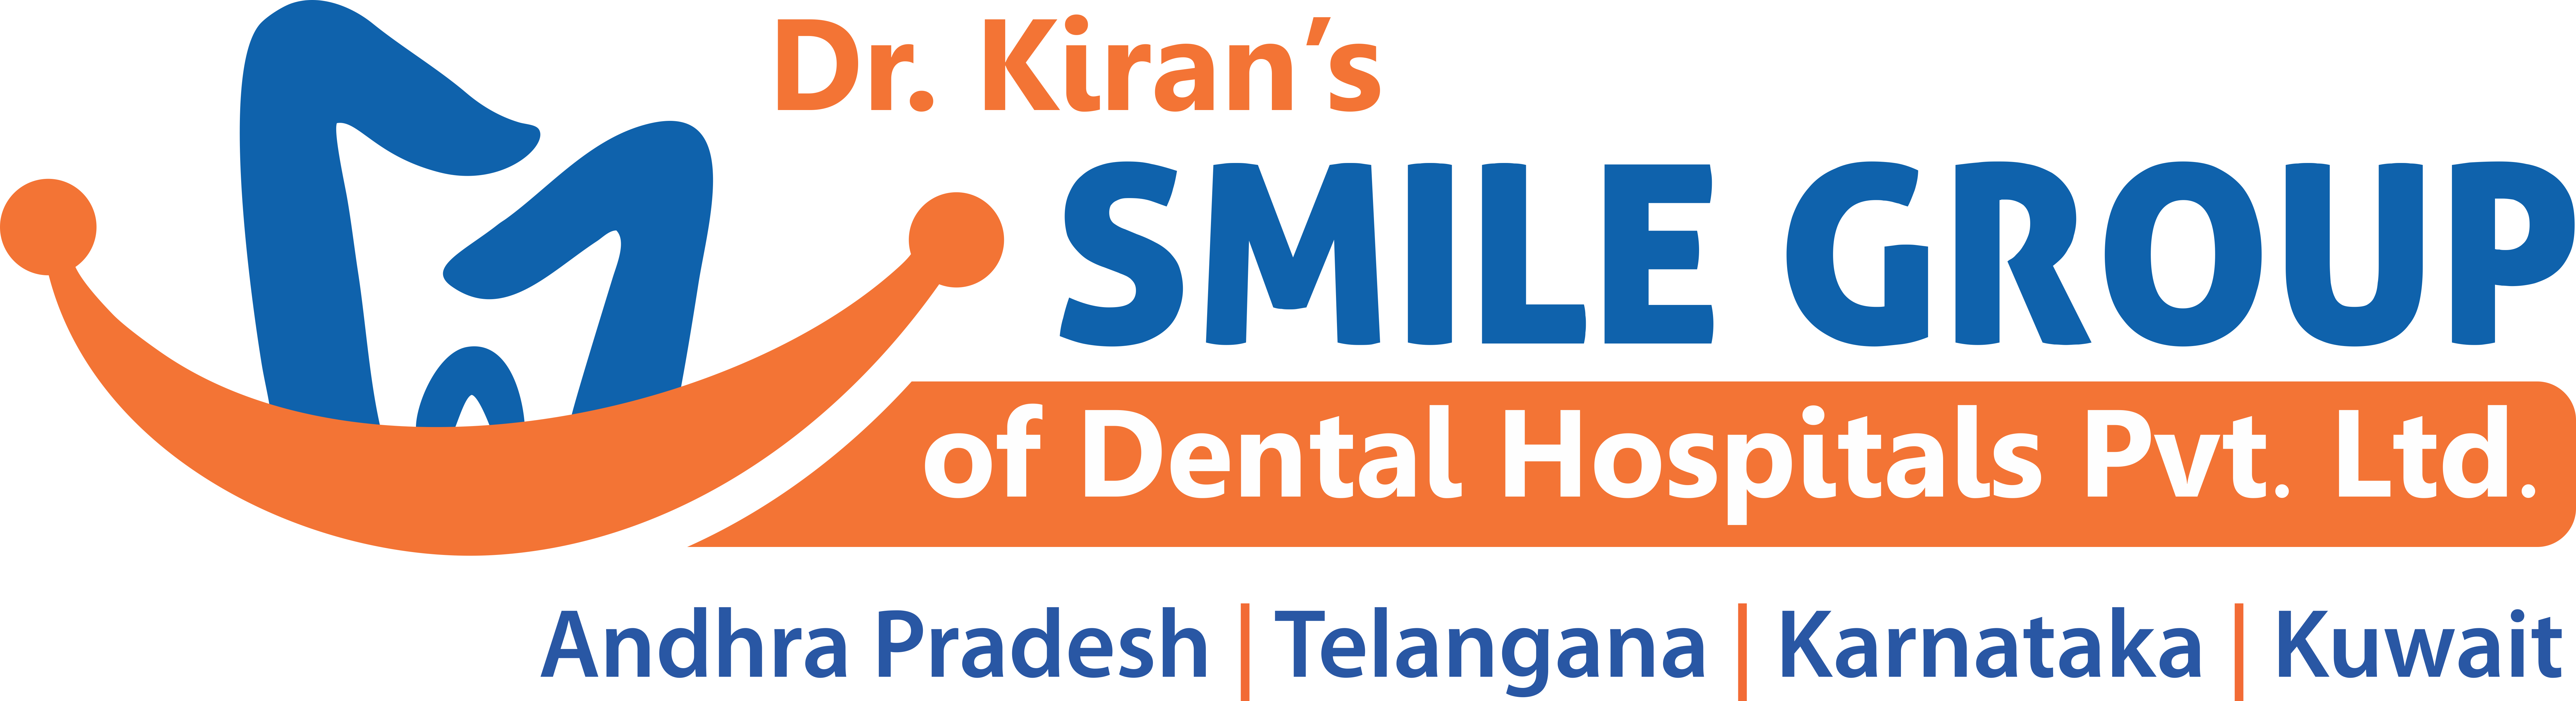 Dr Kiran's Smile Group of Dental Hospitals